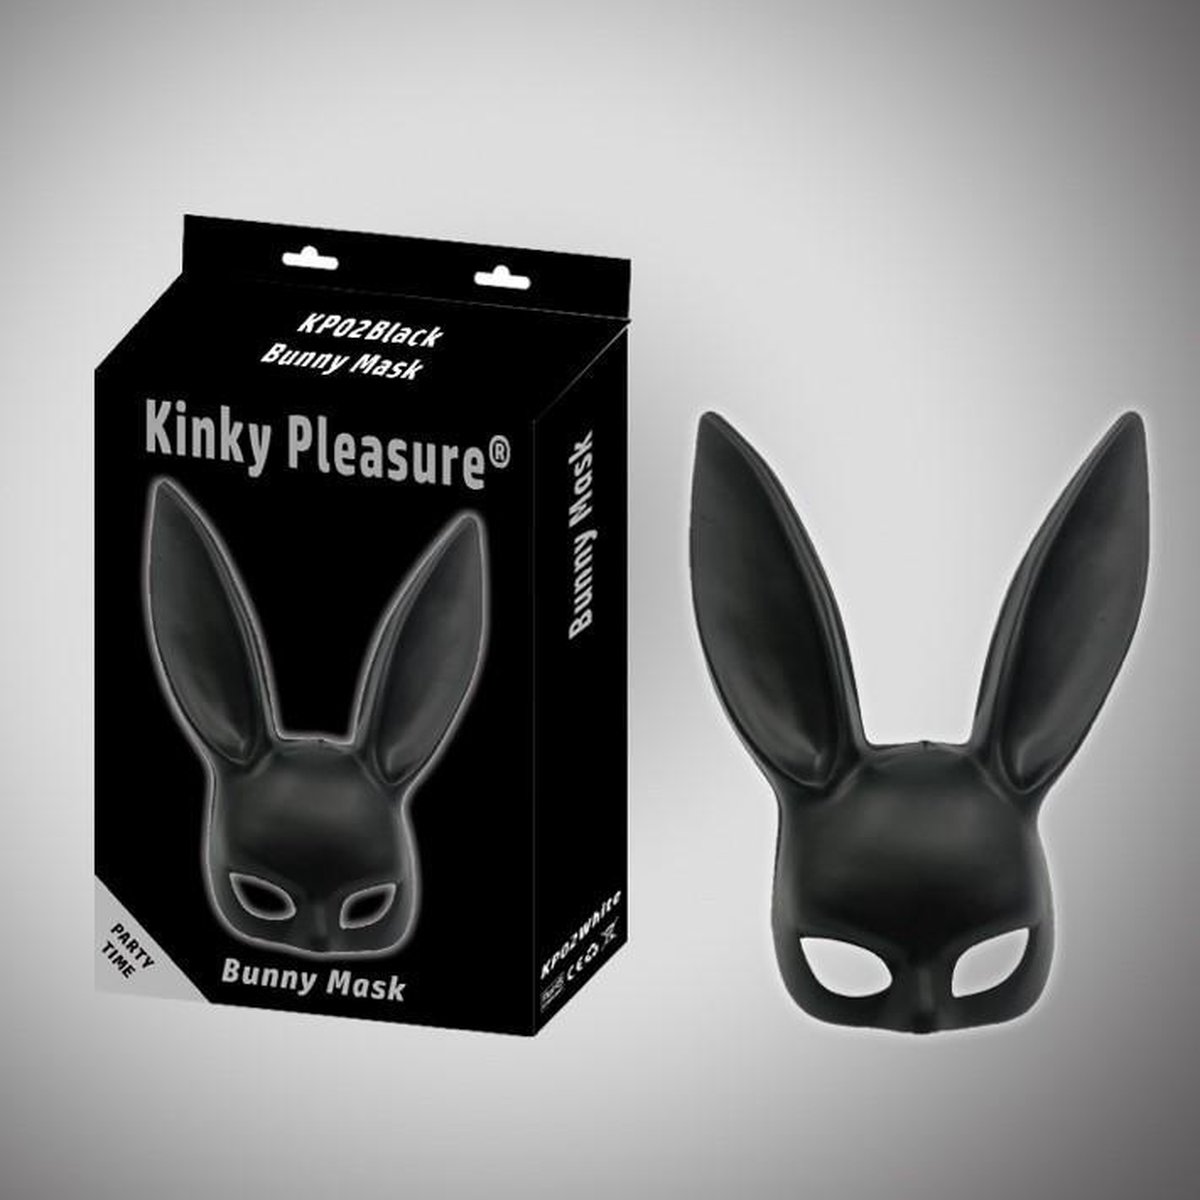 Kinky Pleasure - Bunny Mask - black - Bunny Ears - Kp02 - Fun Fetish product - Party time - Party outfit - Erotische spelletjes - BR121 - Power Escorts - gave groot Formaat Cadeaubox - vanwege Hygiëne redenen kunt u dit product niet retourneren